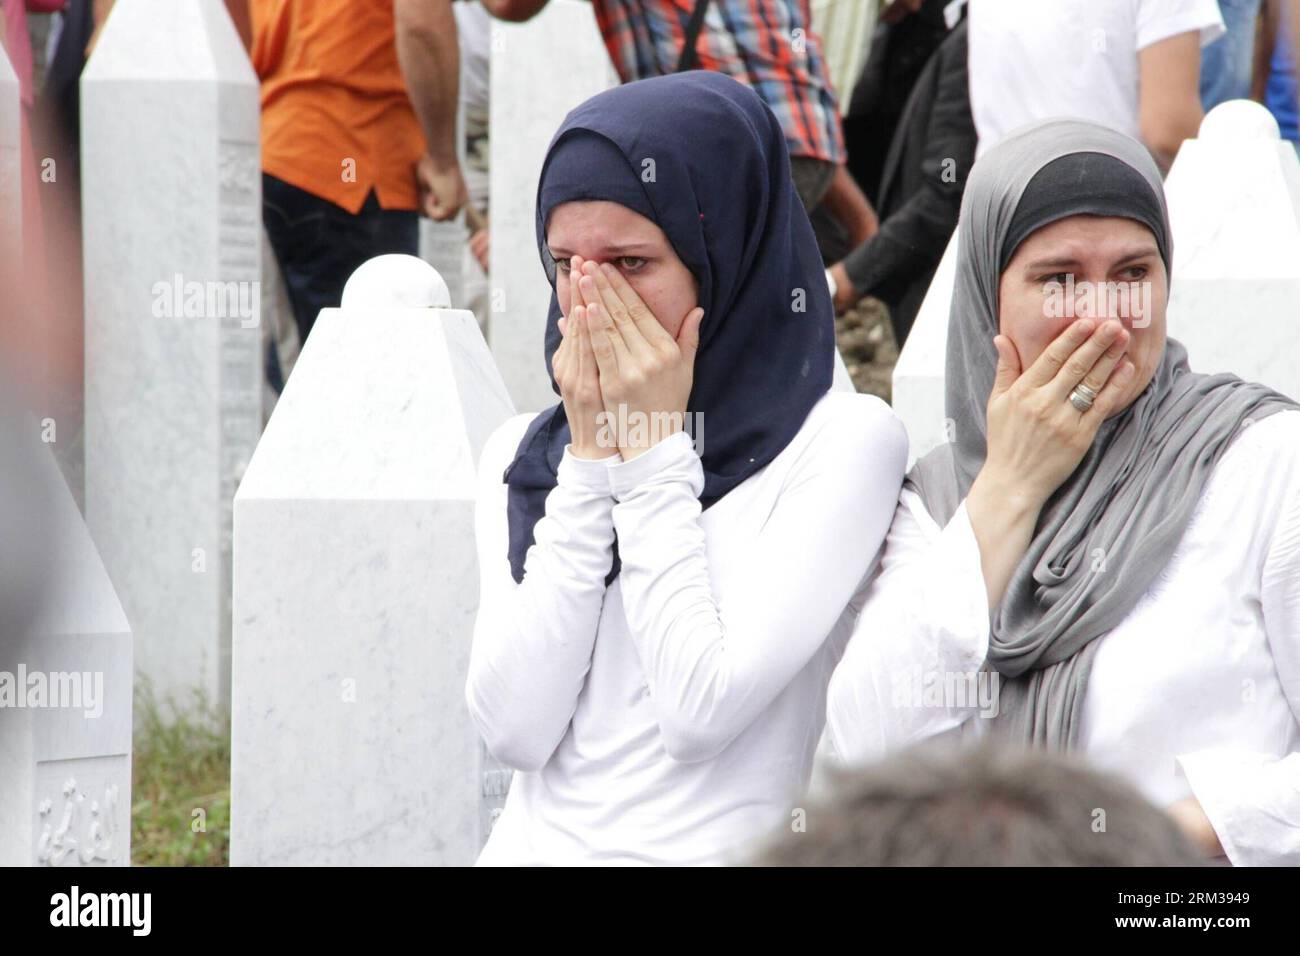 Bildnummer: 60113383 Datum: 11.07.2013 Copyright: imago/Xinhua (130711) -- SREBRENICA, Juli 2013 -- Trauer um ihre Verwandten, die während des Massakers von Sreberenica in Srebrenica, Bosnien und Herzegowina, am 11. Juli 2013 getötet wurden. Tausende von Menschen in Bosnien und Herzegowina versammelten sich am Donnerstag im Potocari Memorial Center in der Nähe von Srebrenica, um um für die Opfer des Massakers von Srebrenica 1995 zu trauern. Insgesamt 409 neu identifizierte Opfer wurden am 18. Jahrestag des Massakers in der Mitte begraben, was die Anzahl der Grabsteine auf über 6000 erhöht. (Xinhua/Haris Memija) BIH-SREBRENICA-MASSAKER-MEMORIAL PUBLICATI Stockfoto